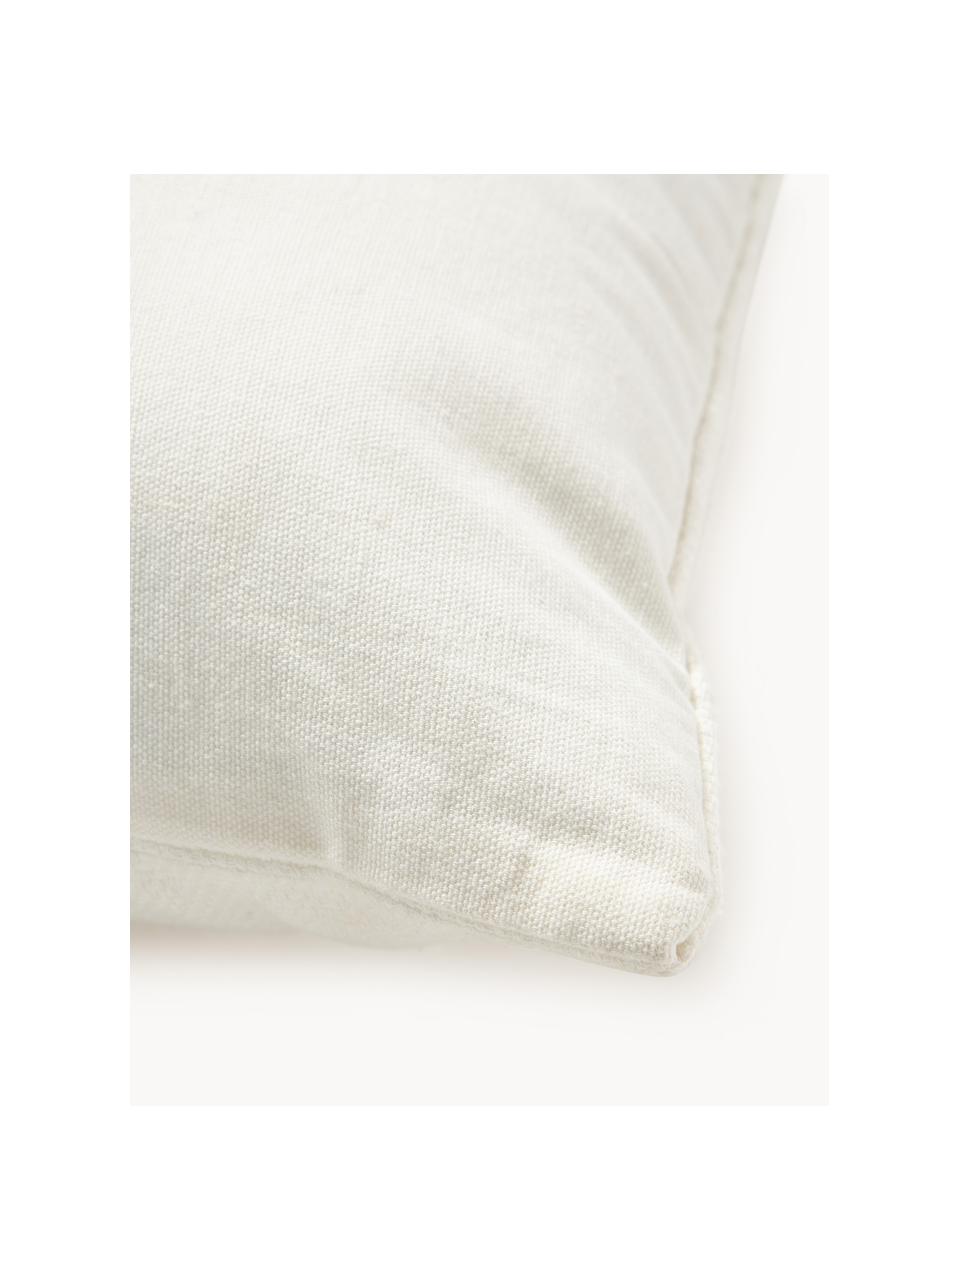 Haftowana poszewka na poduszkę z bawełny Reza, Tapicerka: 100% bawełna, Złamana biel, brązowy, peach, S 45 x D 45 cm